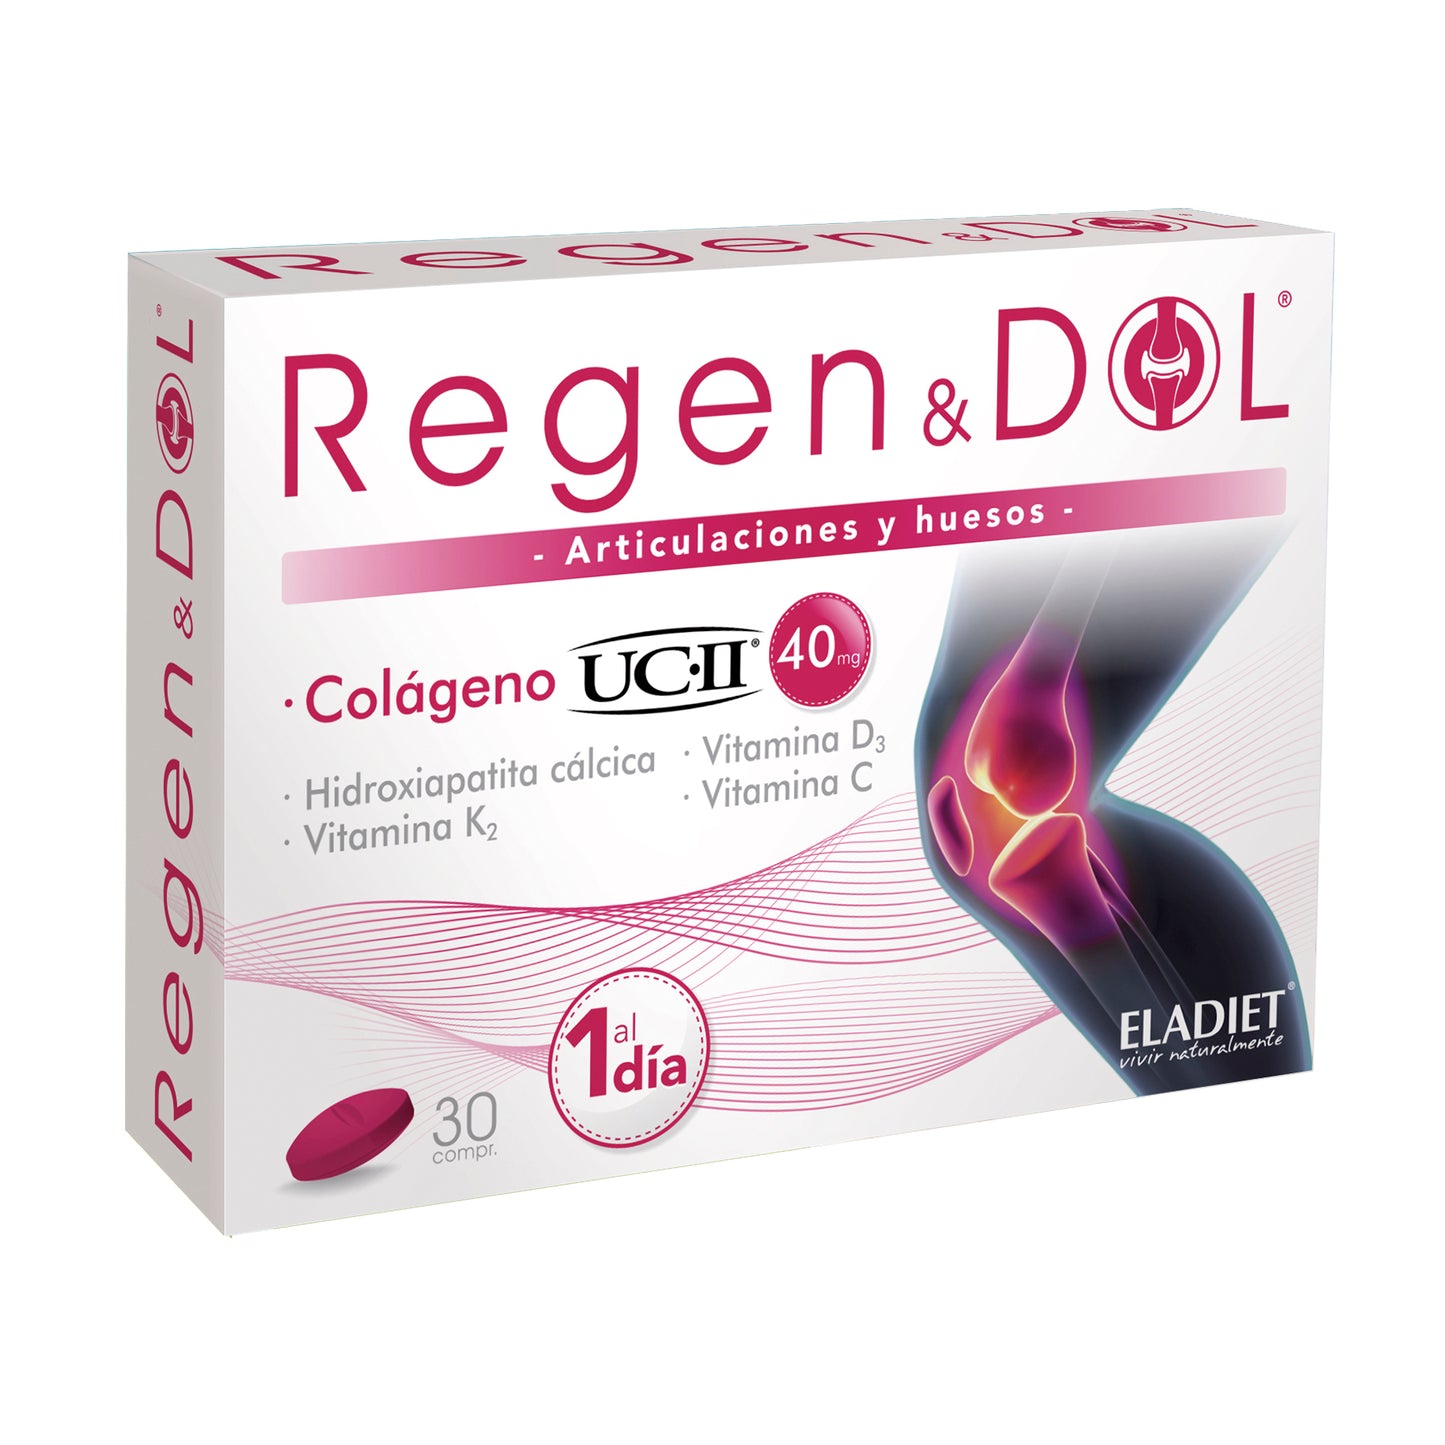 RegenDol Colágeno UC-II